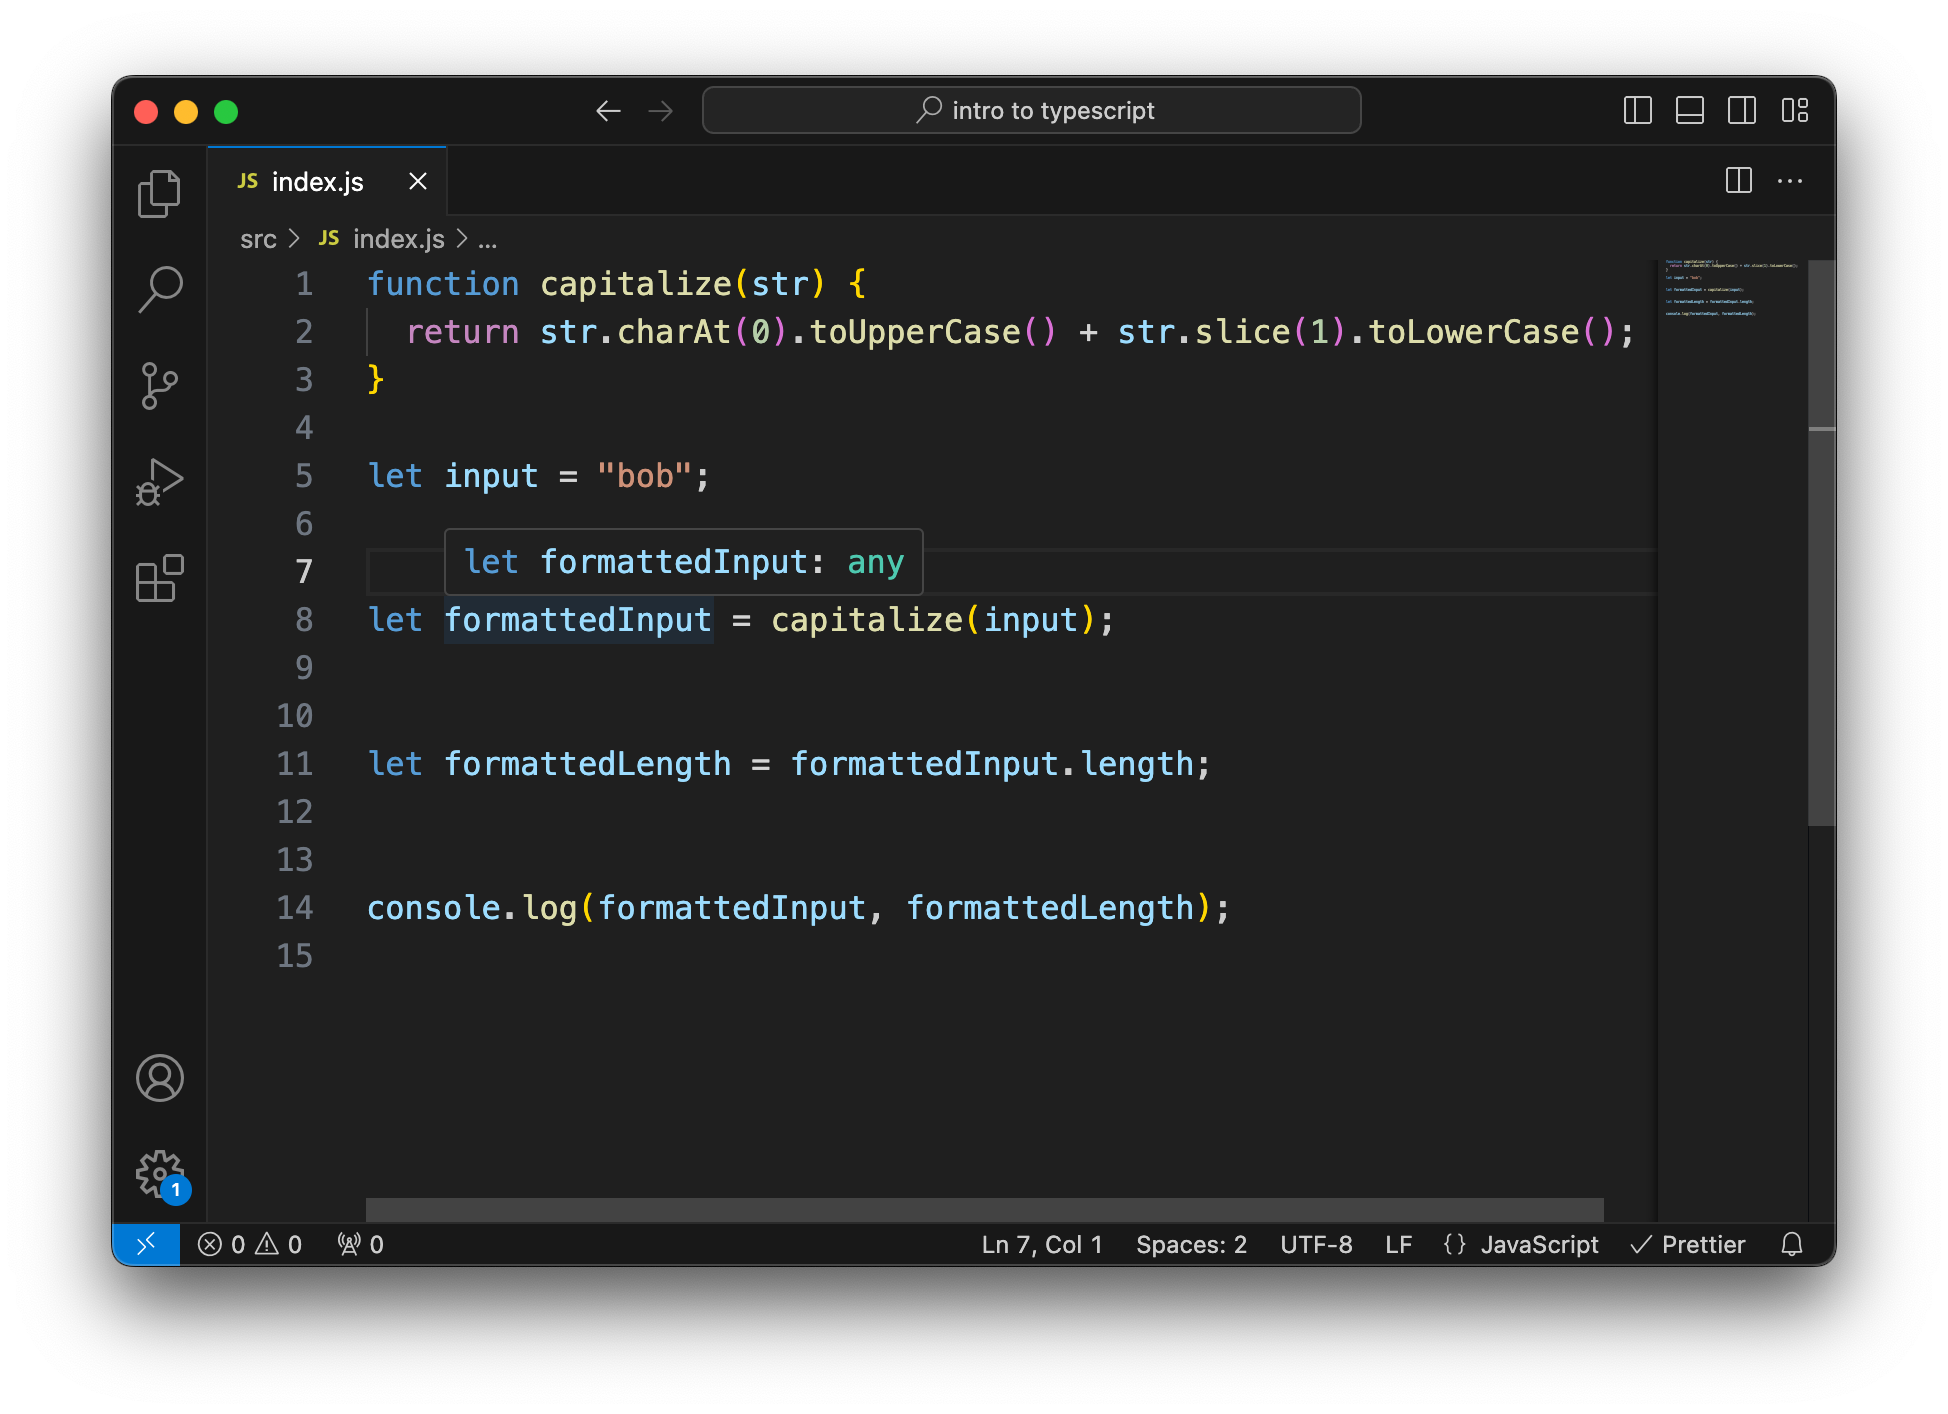 VS Code con un código JavaScript simple. Primero, definimos una función simple que capitaliza un string, luego usamos esta función para capitalizar un string. La imagen muestra que cuando pasas el cursor sobre el valor de retorno, ahora su tipo es 'any'.